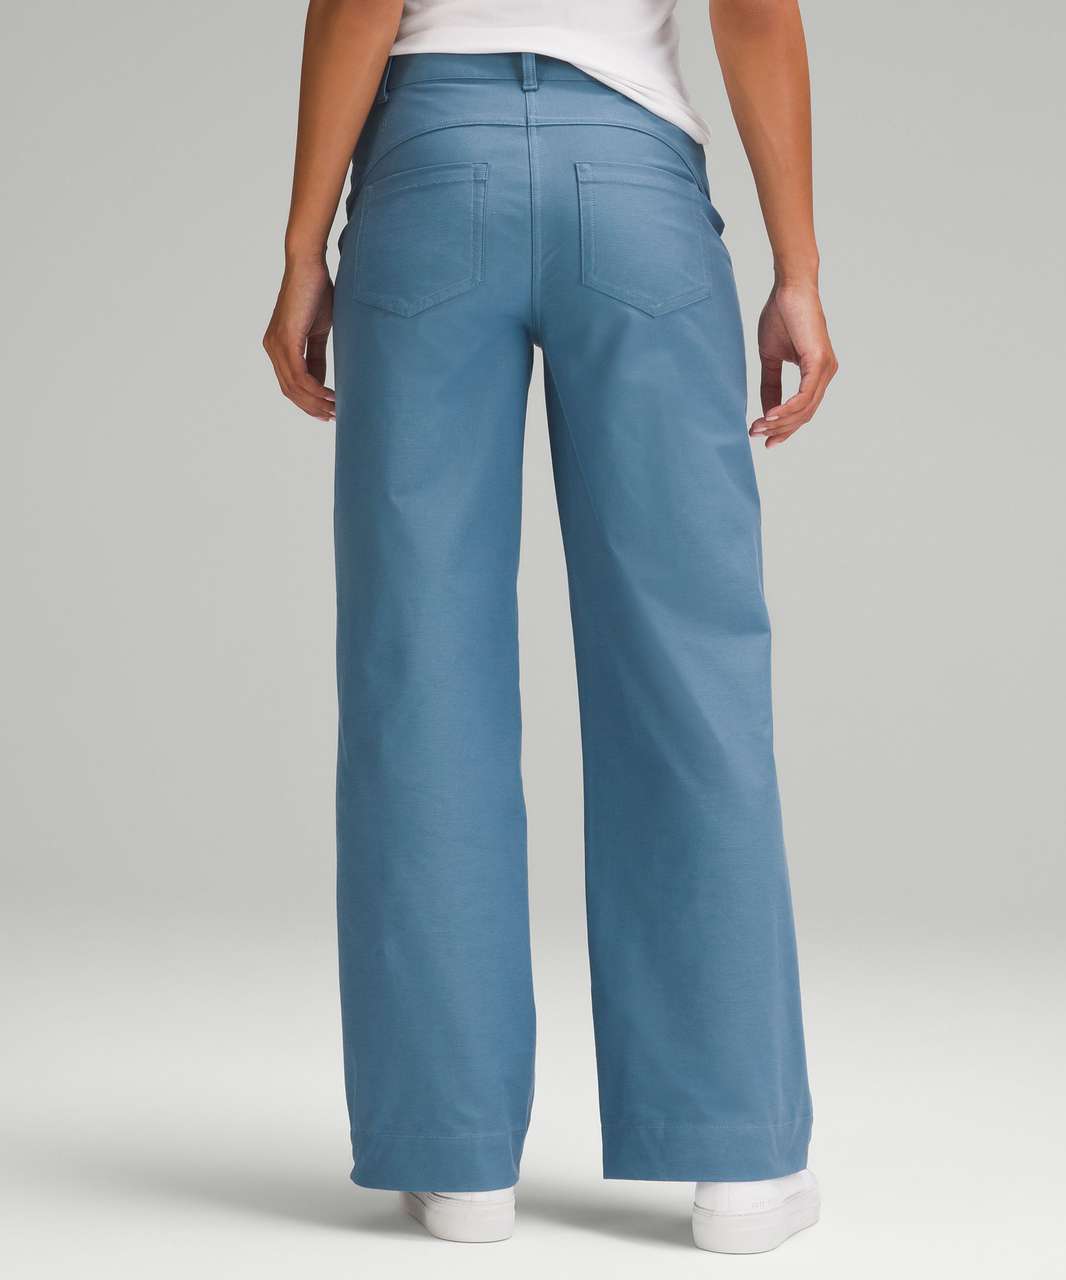 Lululemon athletica City Sleek 5 Pocket High-Rise Wide-Leg Pant Full Length  *Light Utilitech, Women's Trousers